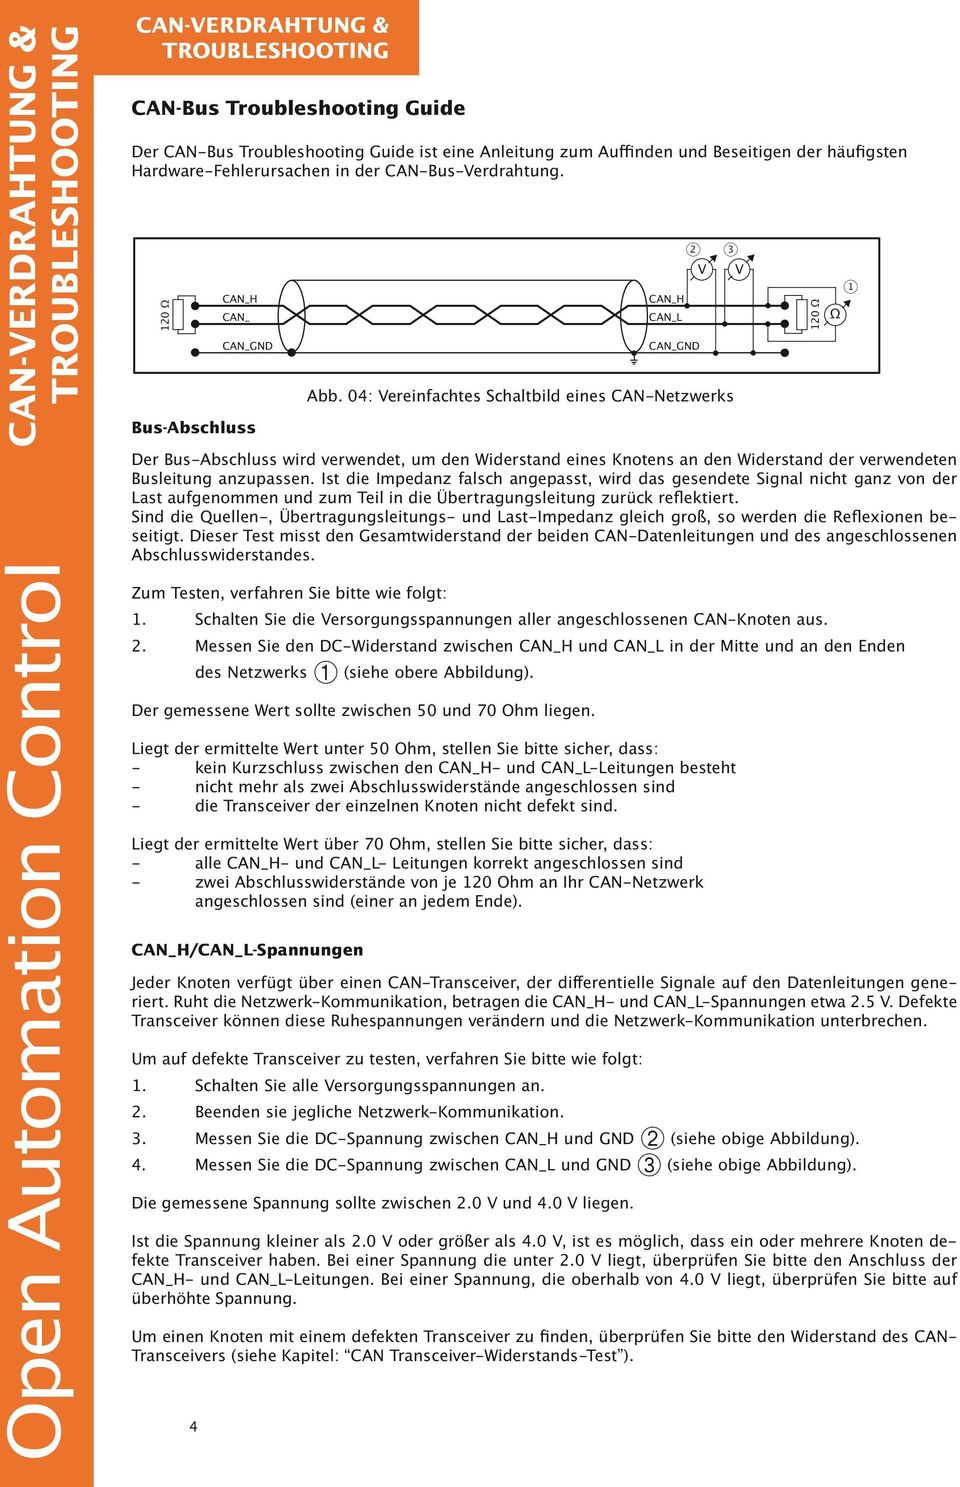 0: Vereinfachtes Schaltbild eines CAN-Netzwerks Der Bus-Abschluss wird verwendet, um den Widerstand eines Knotens an den Widerstand der verwendeten Busleitung anzupassen.